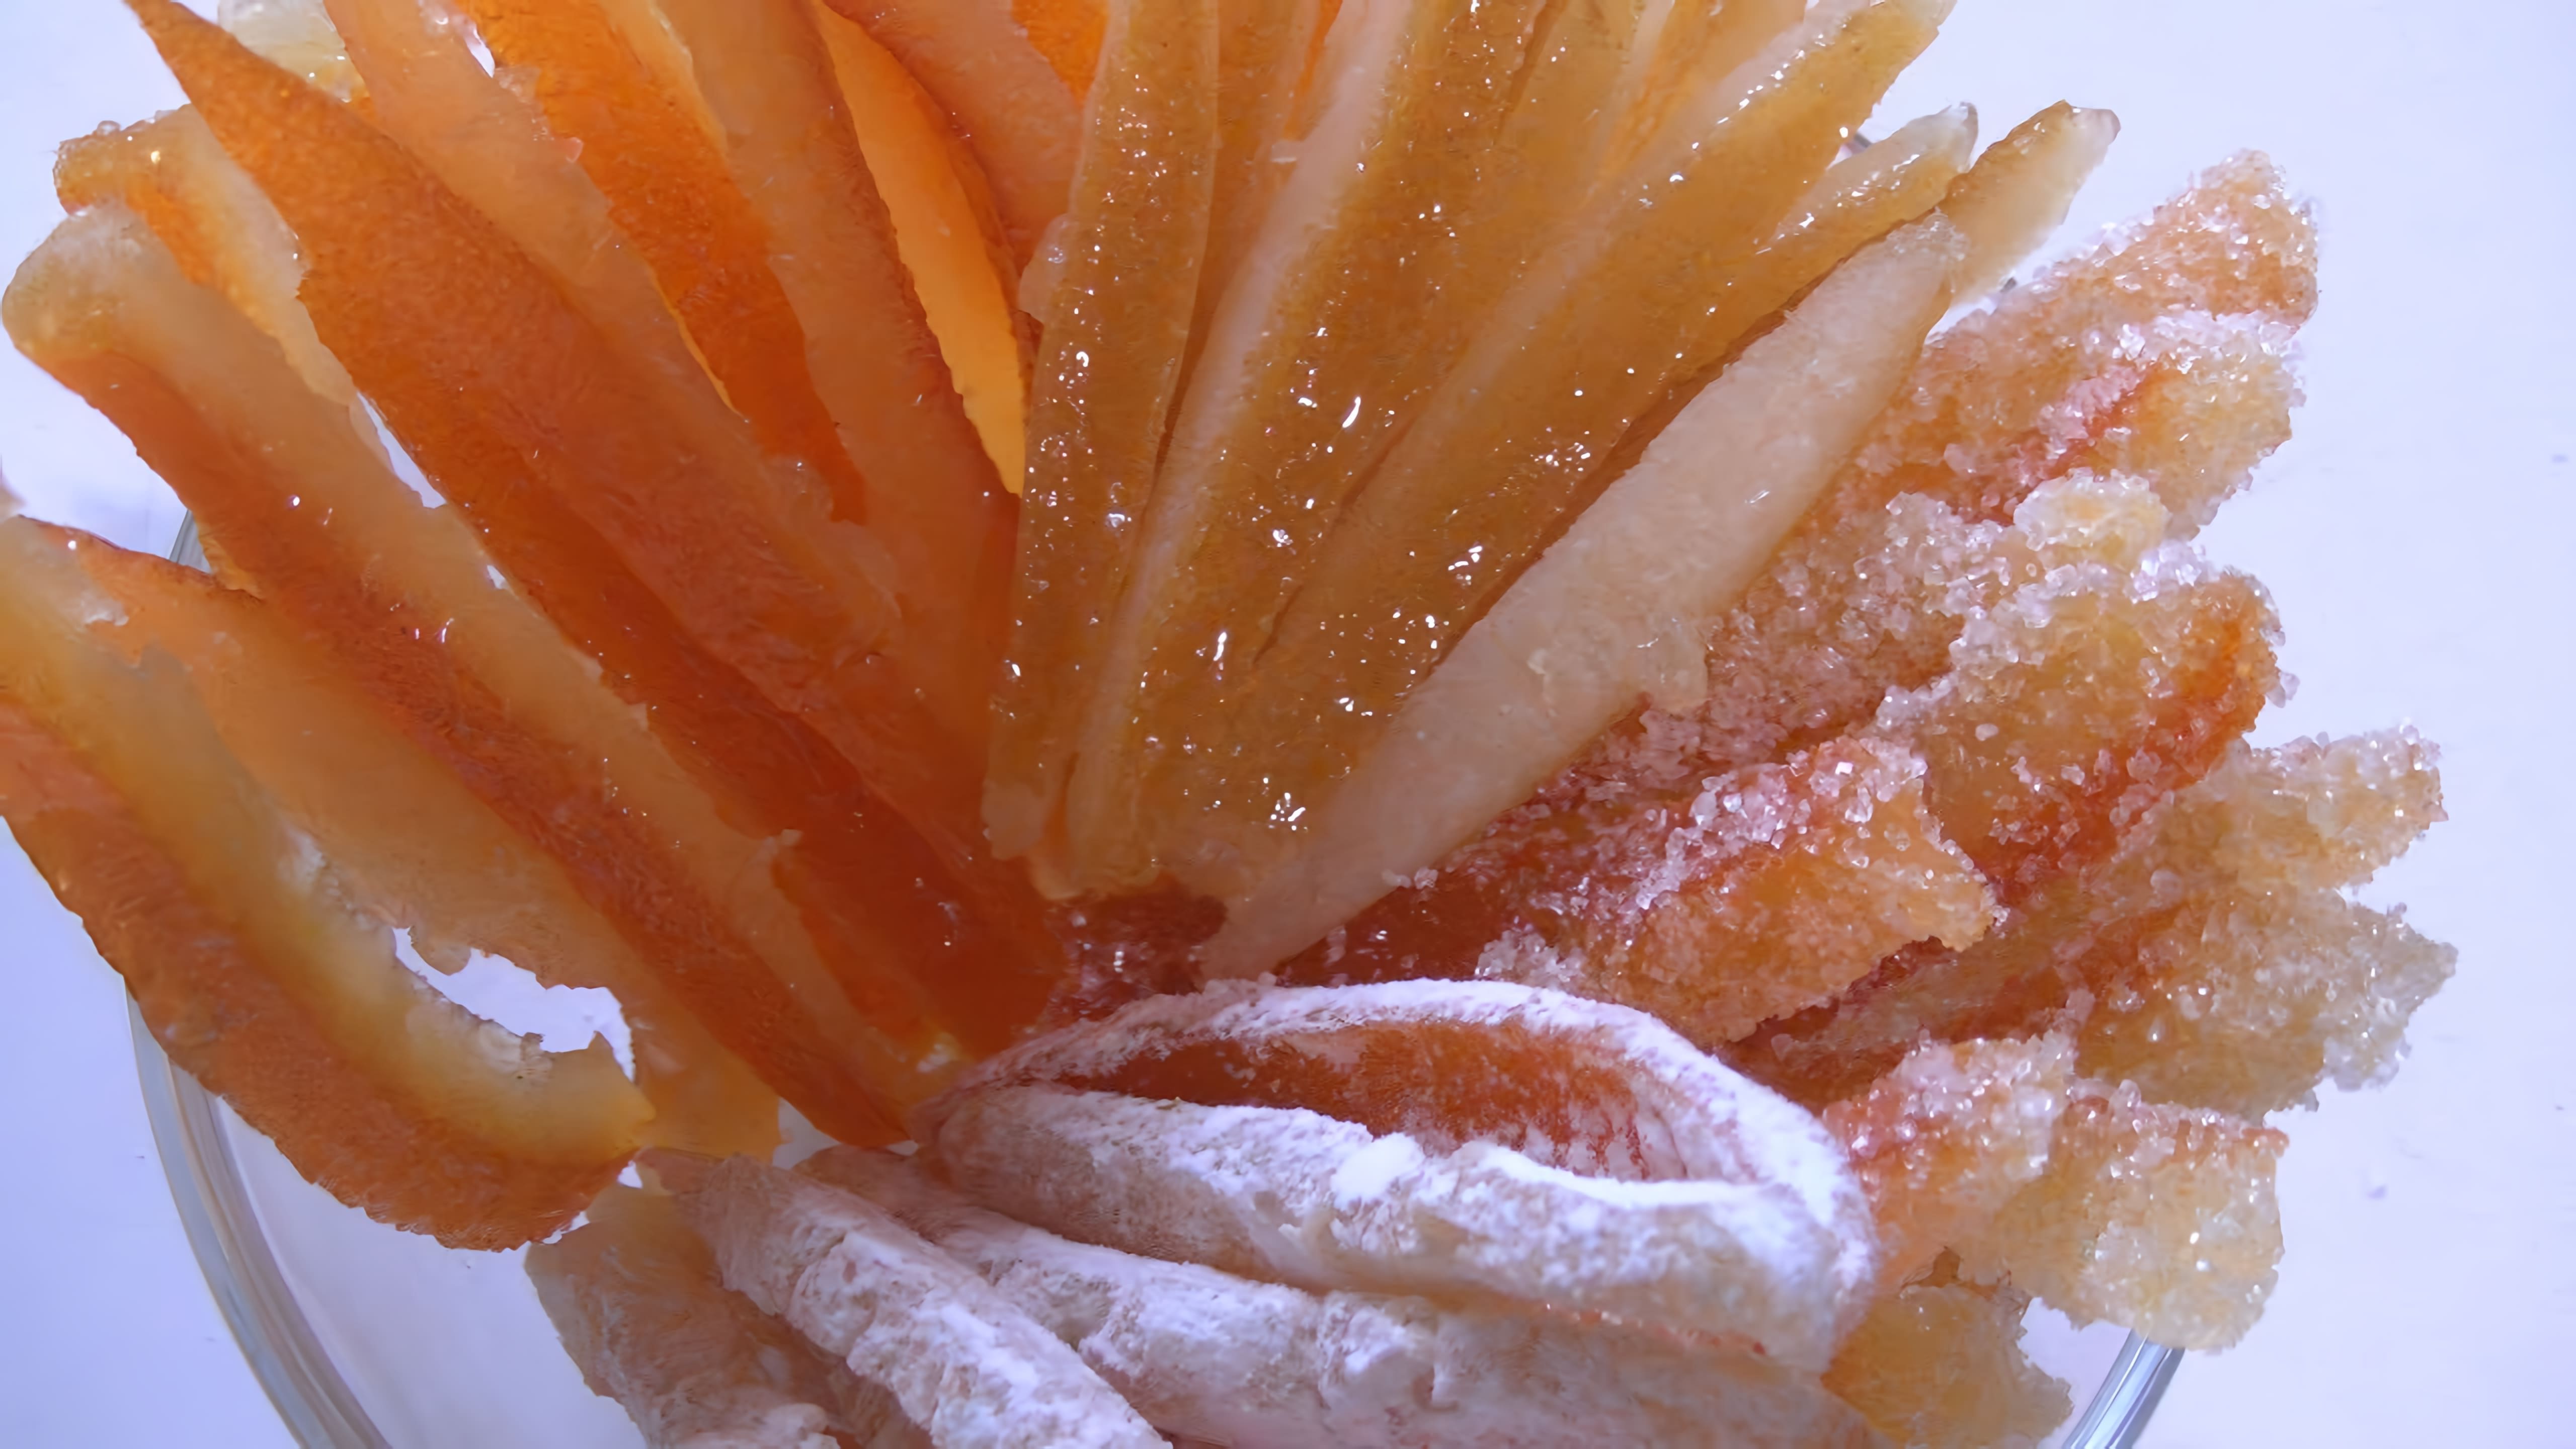 В этом видео демонстрируется процесс приготовления цукатов из апельсиновых и лимонных корок